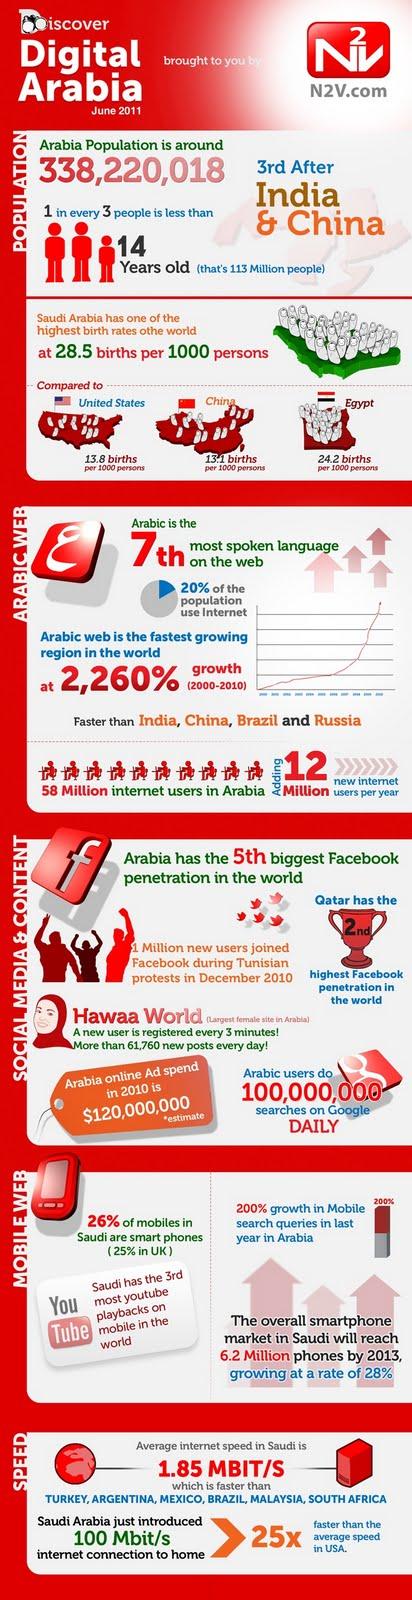 L'utilisation d'Internet aux pays arabes